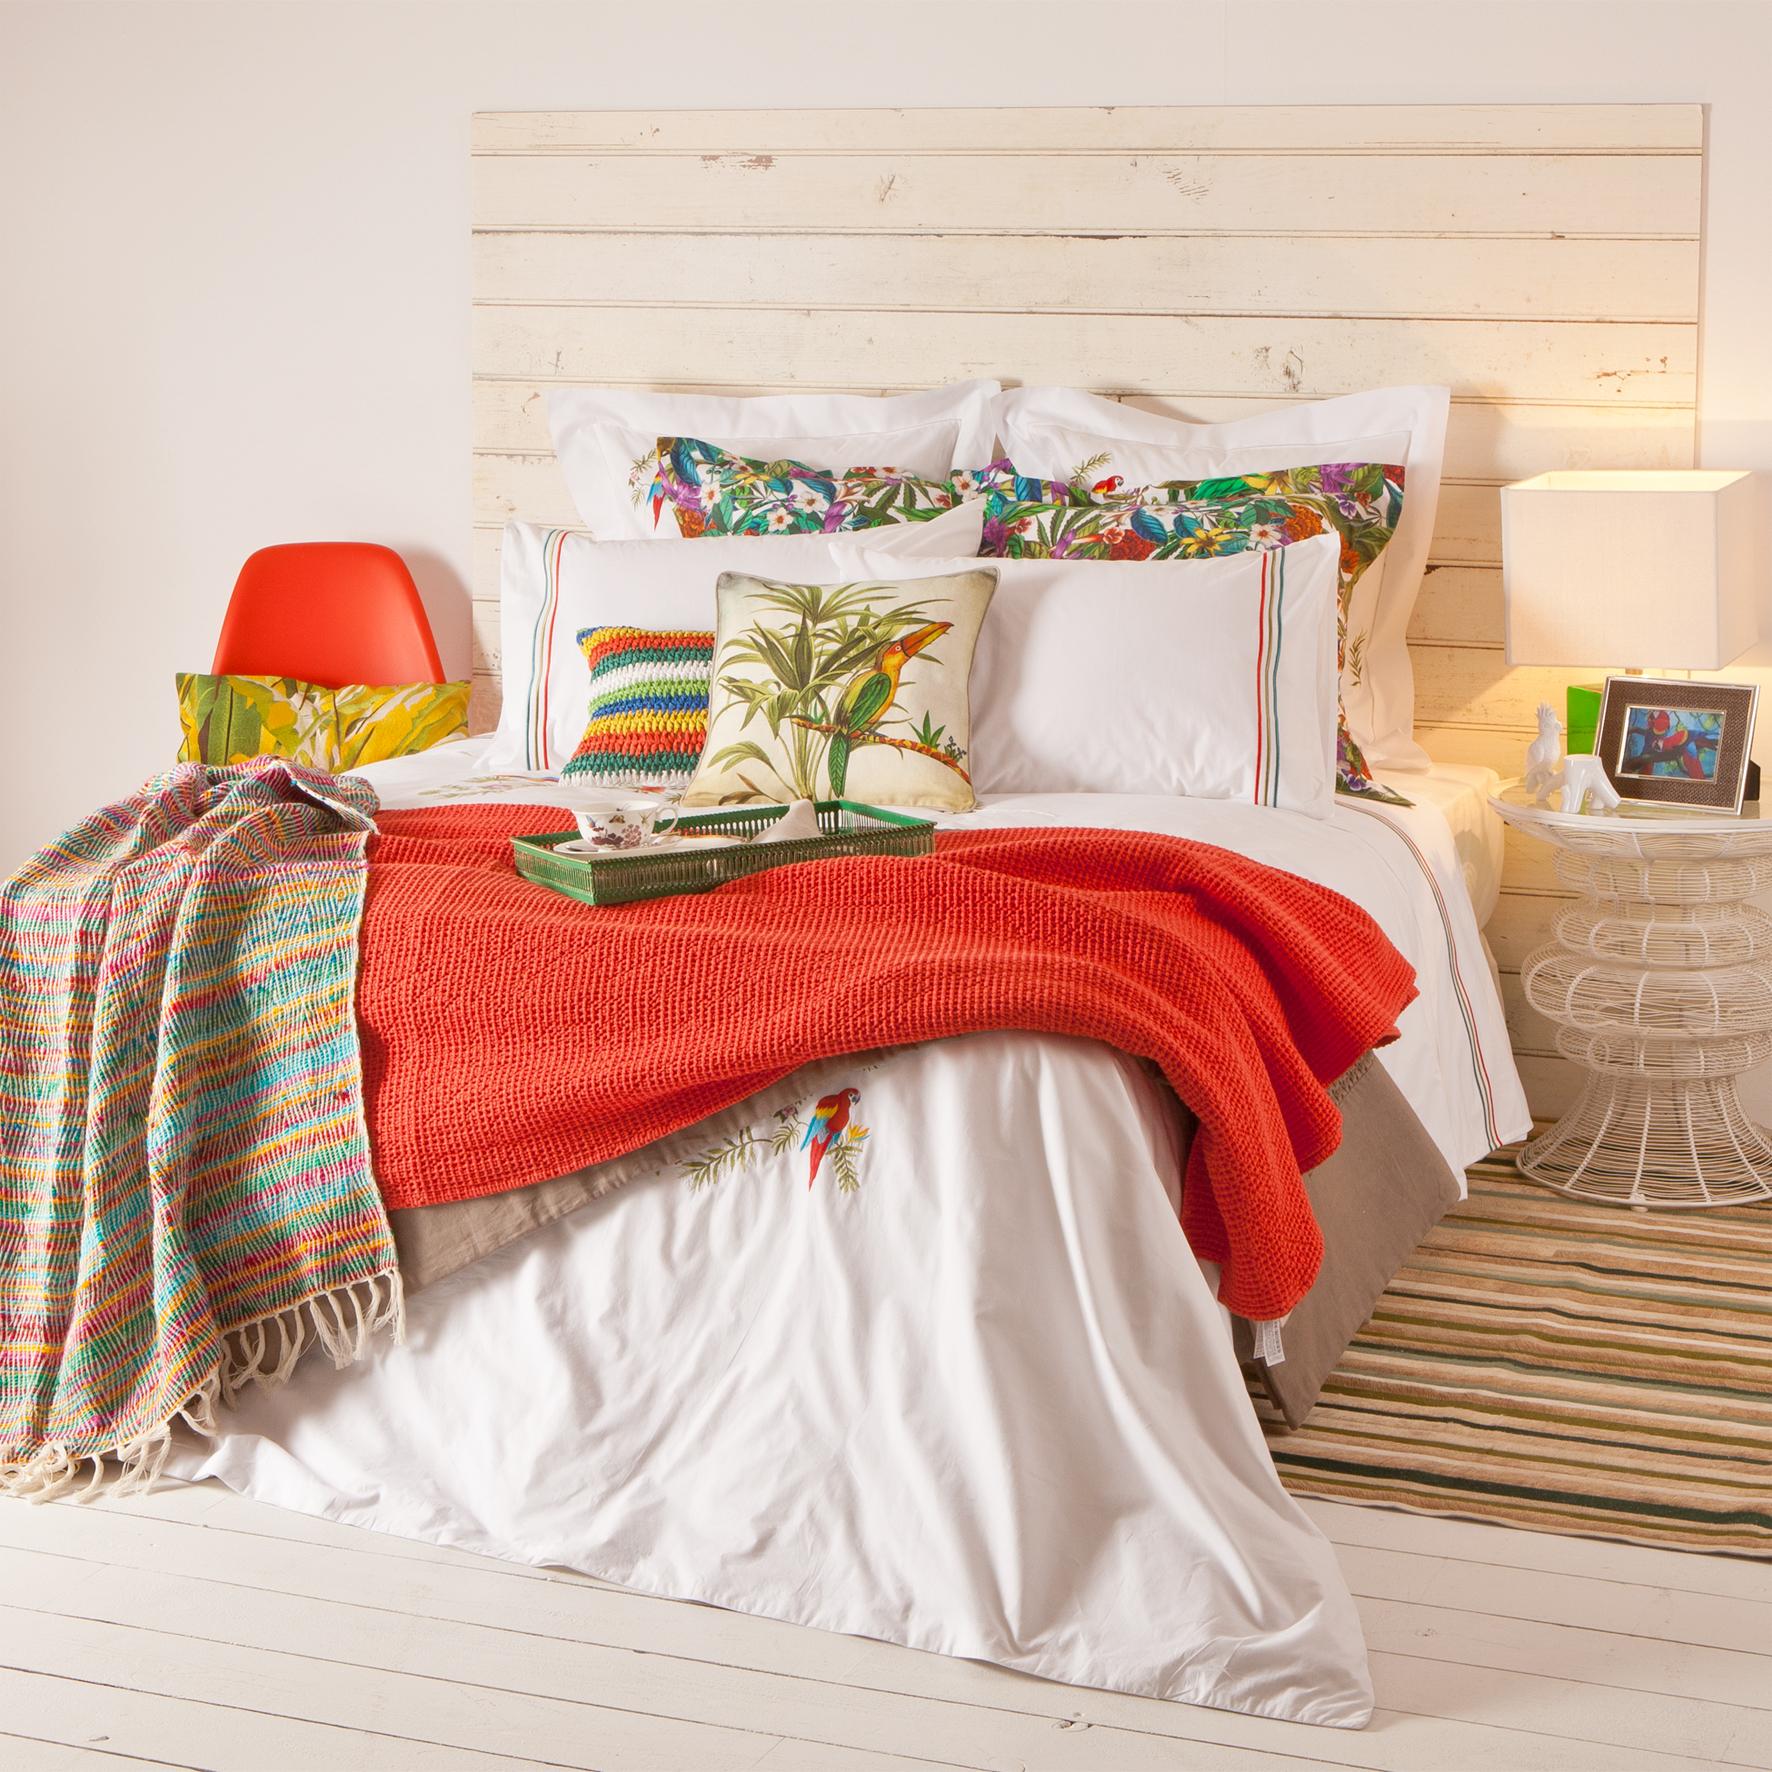 Karibik-Feeling im Schlafzimmer #bettwäsche #tagesdecke #zarahome ©Zara Home